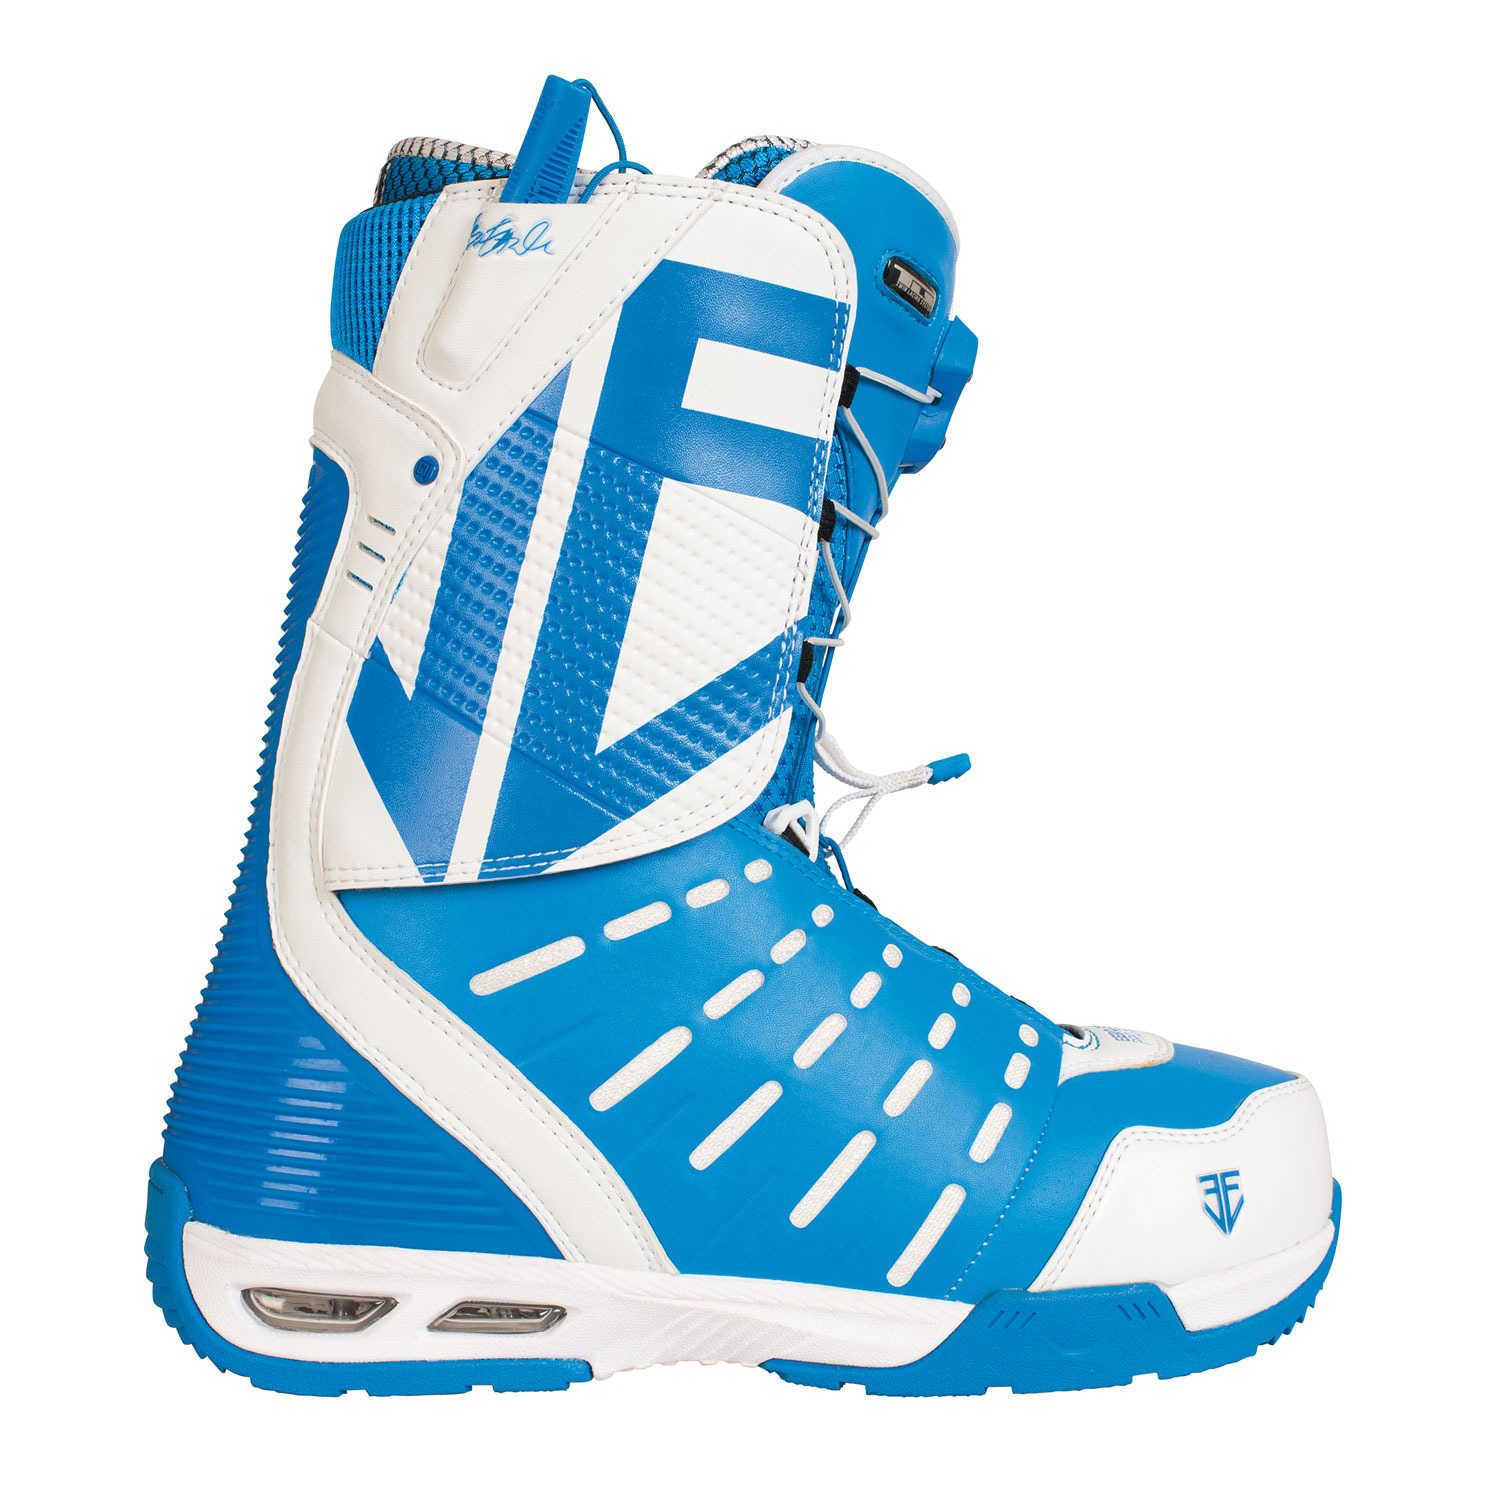 Boots snowboard Team TLS - Eero